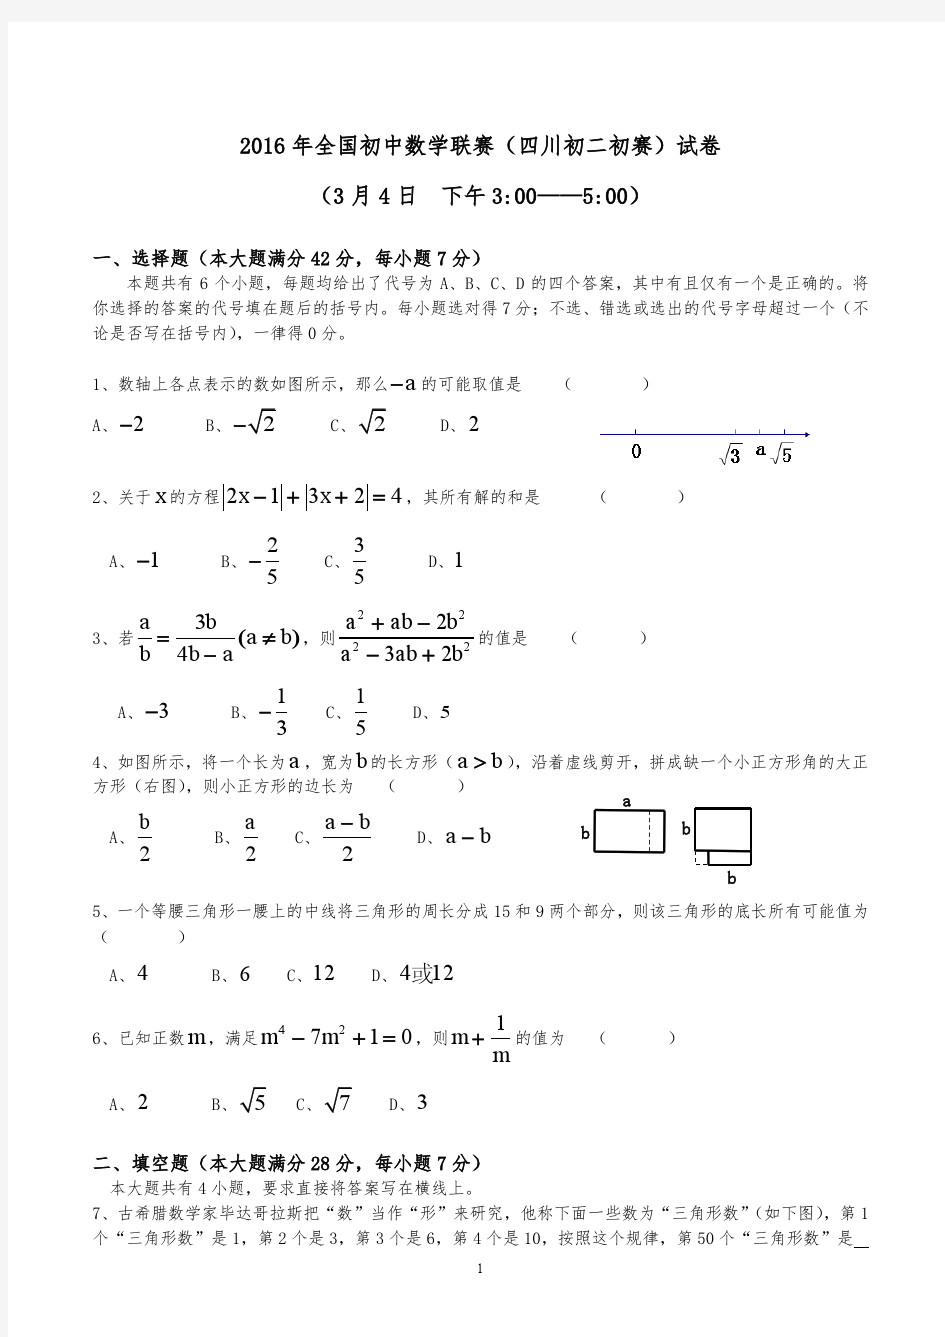 2016年四川省初中数学联赛初赛 初二组试题及答案